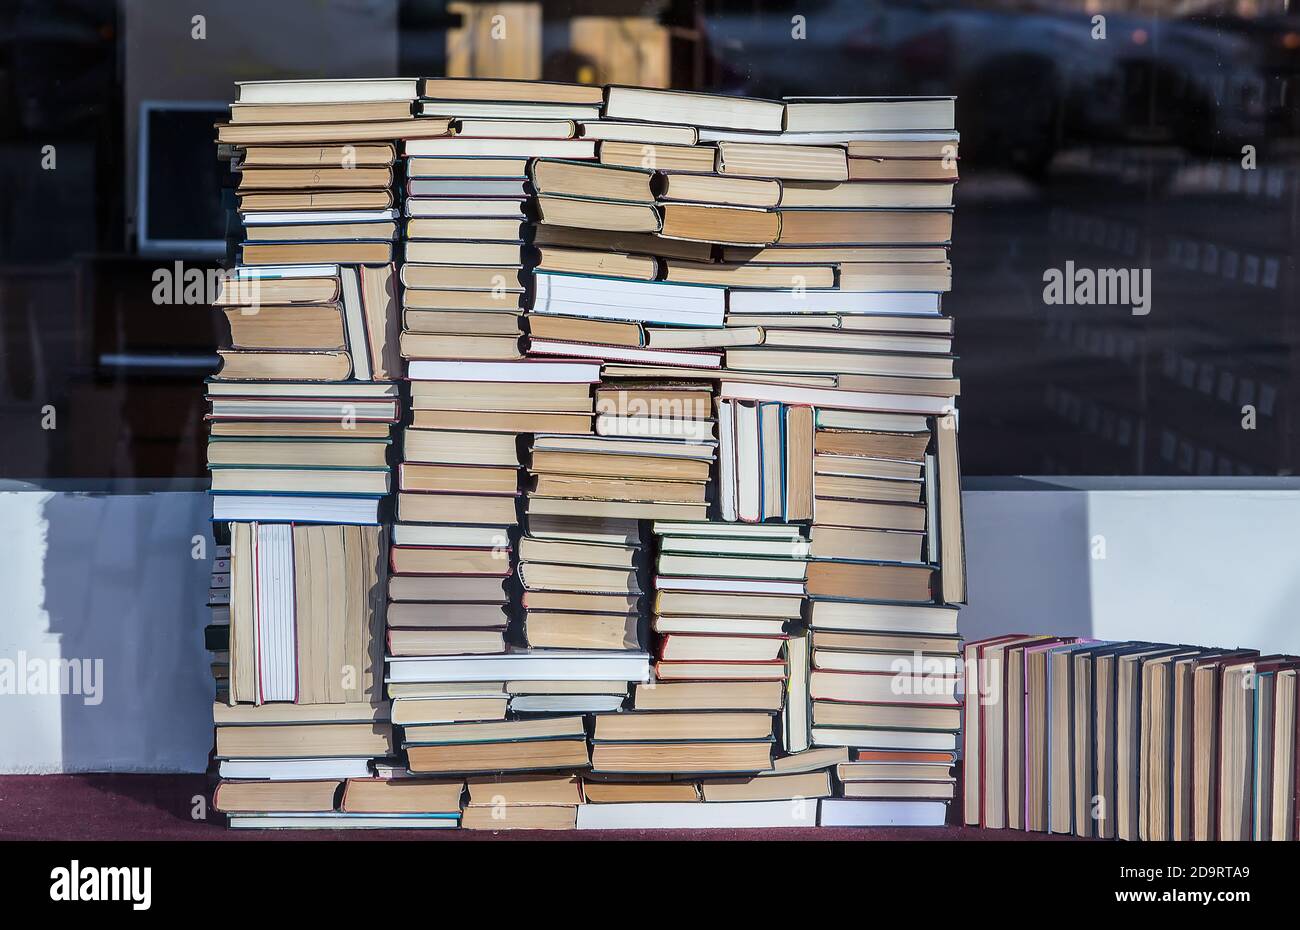 Una pila de libros antiguos y nuevos de diferentes tamaños y formas apilados de una manera caótica. Primer plano. Foto de stock